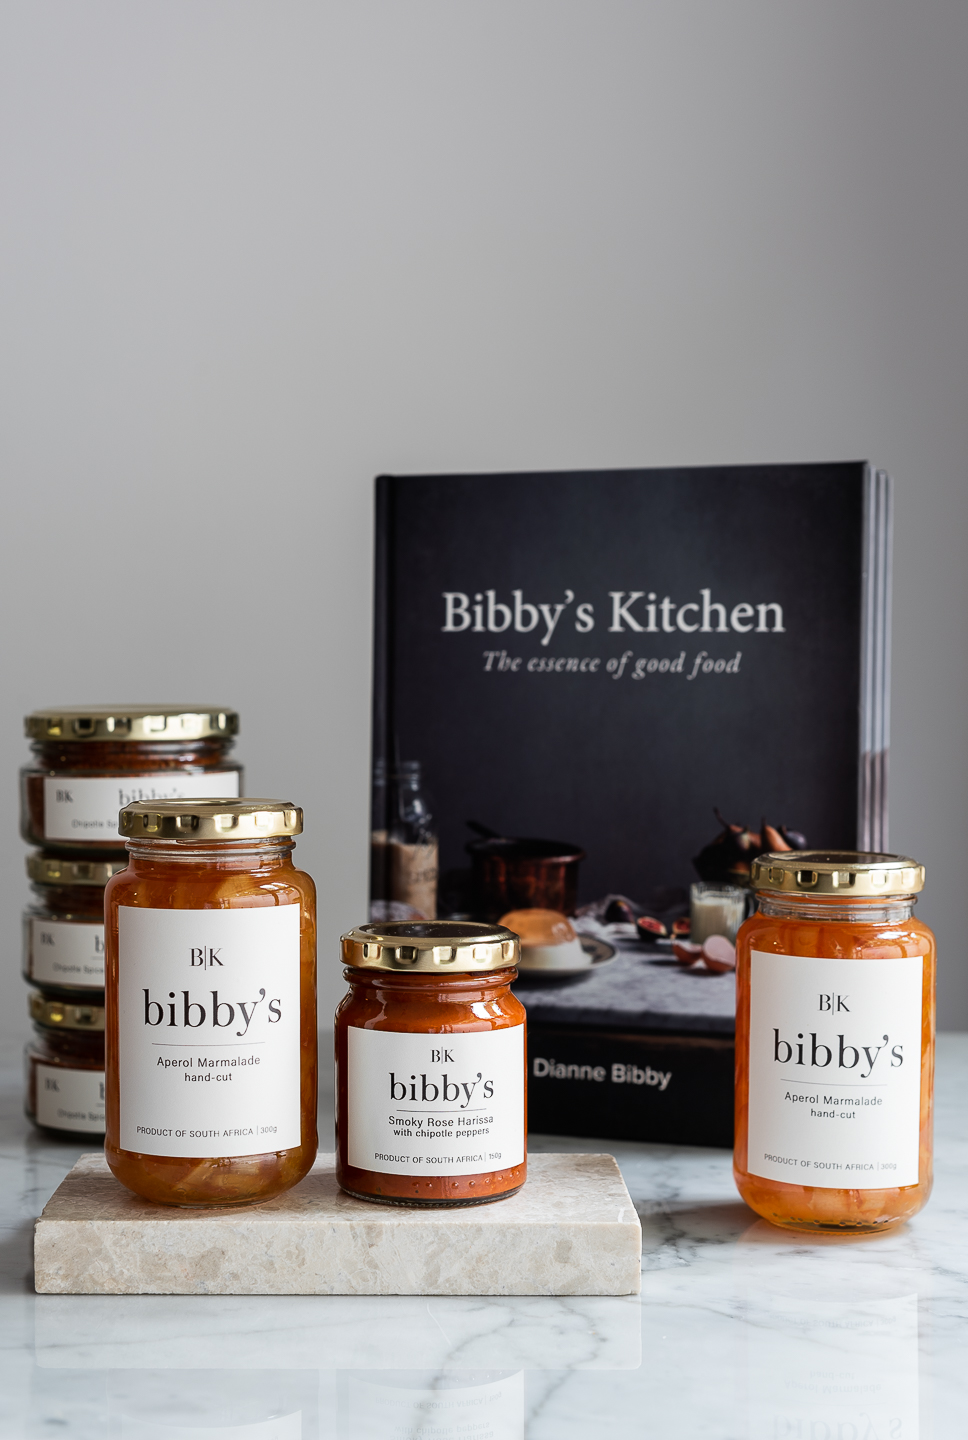 Bibby's Brand